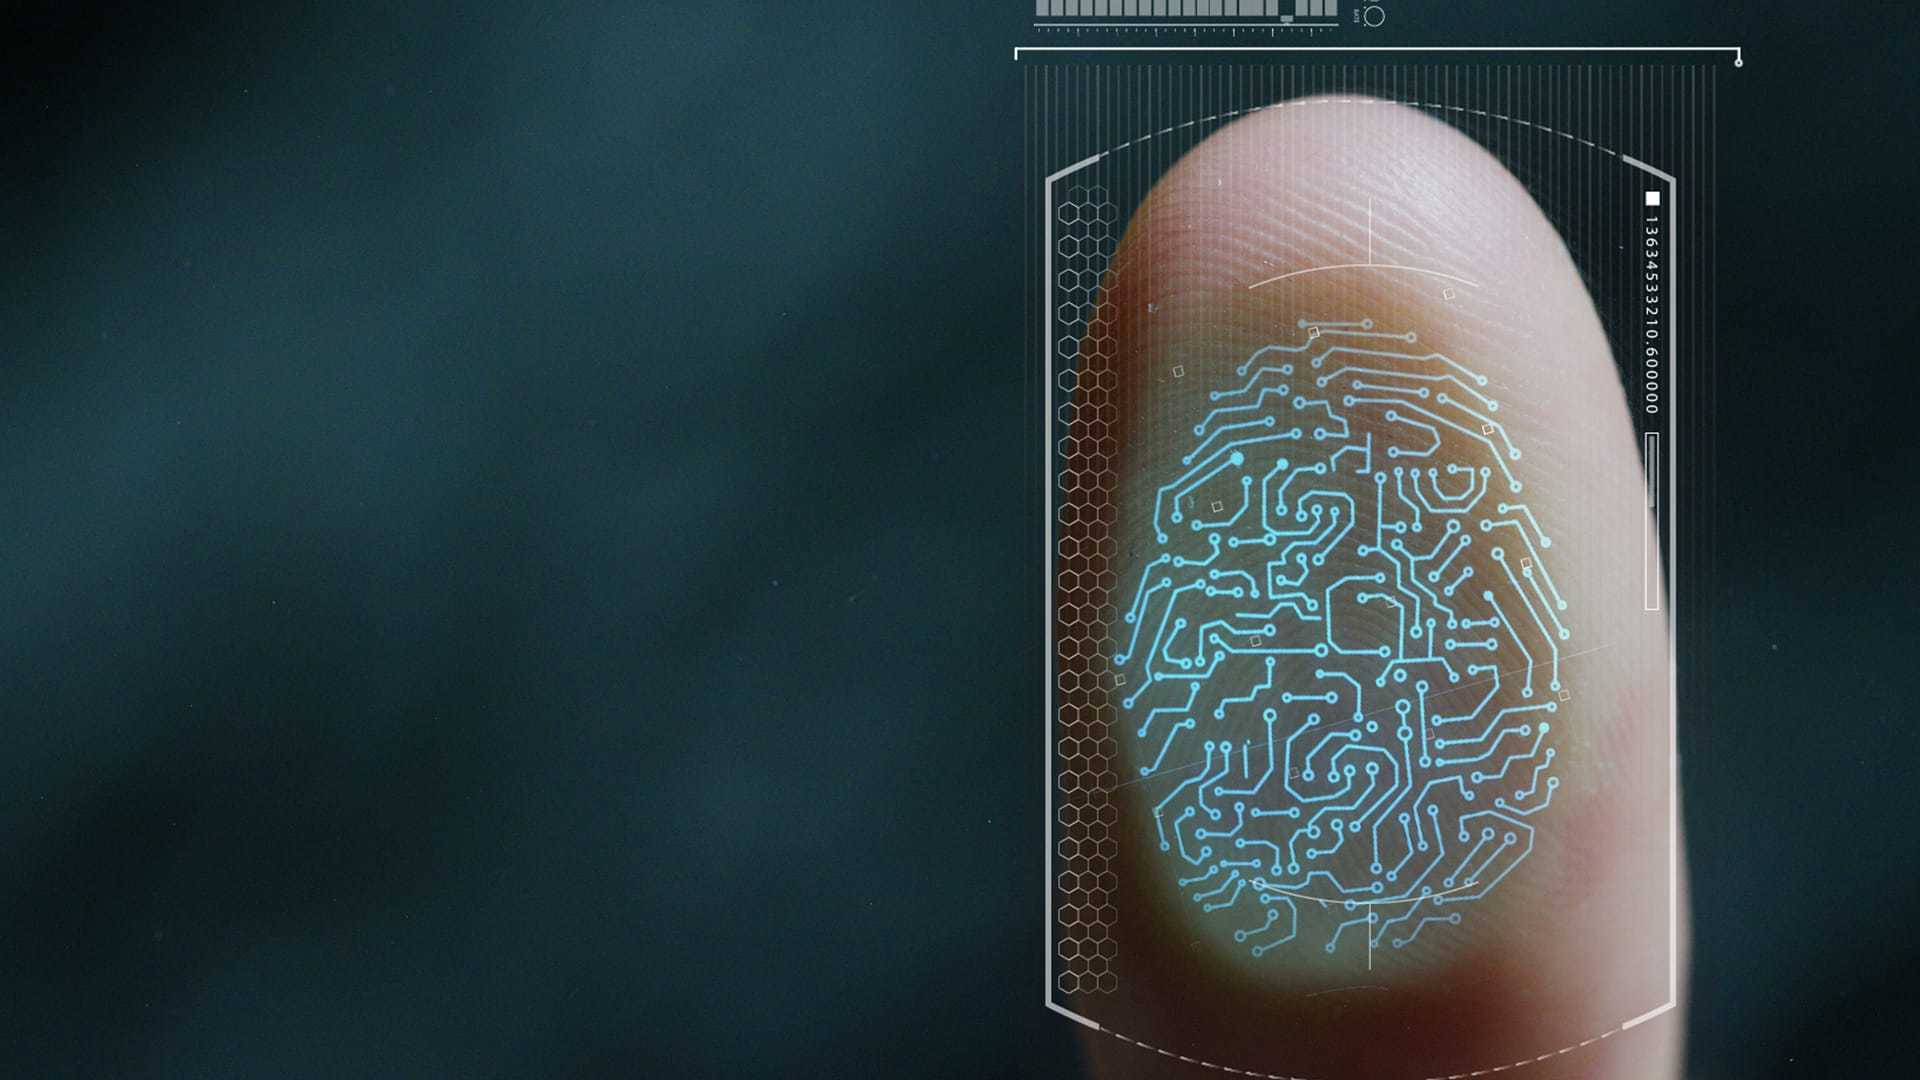 www.biometricupdate.com